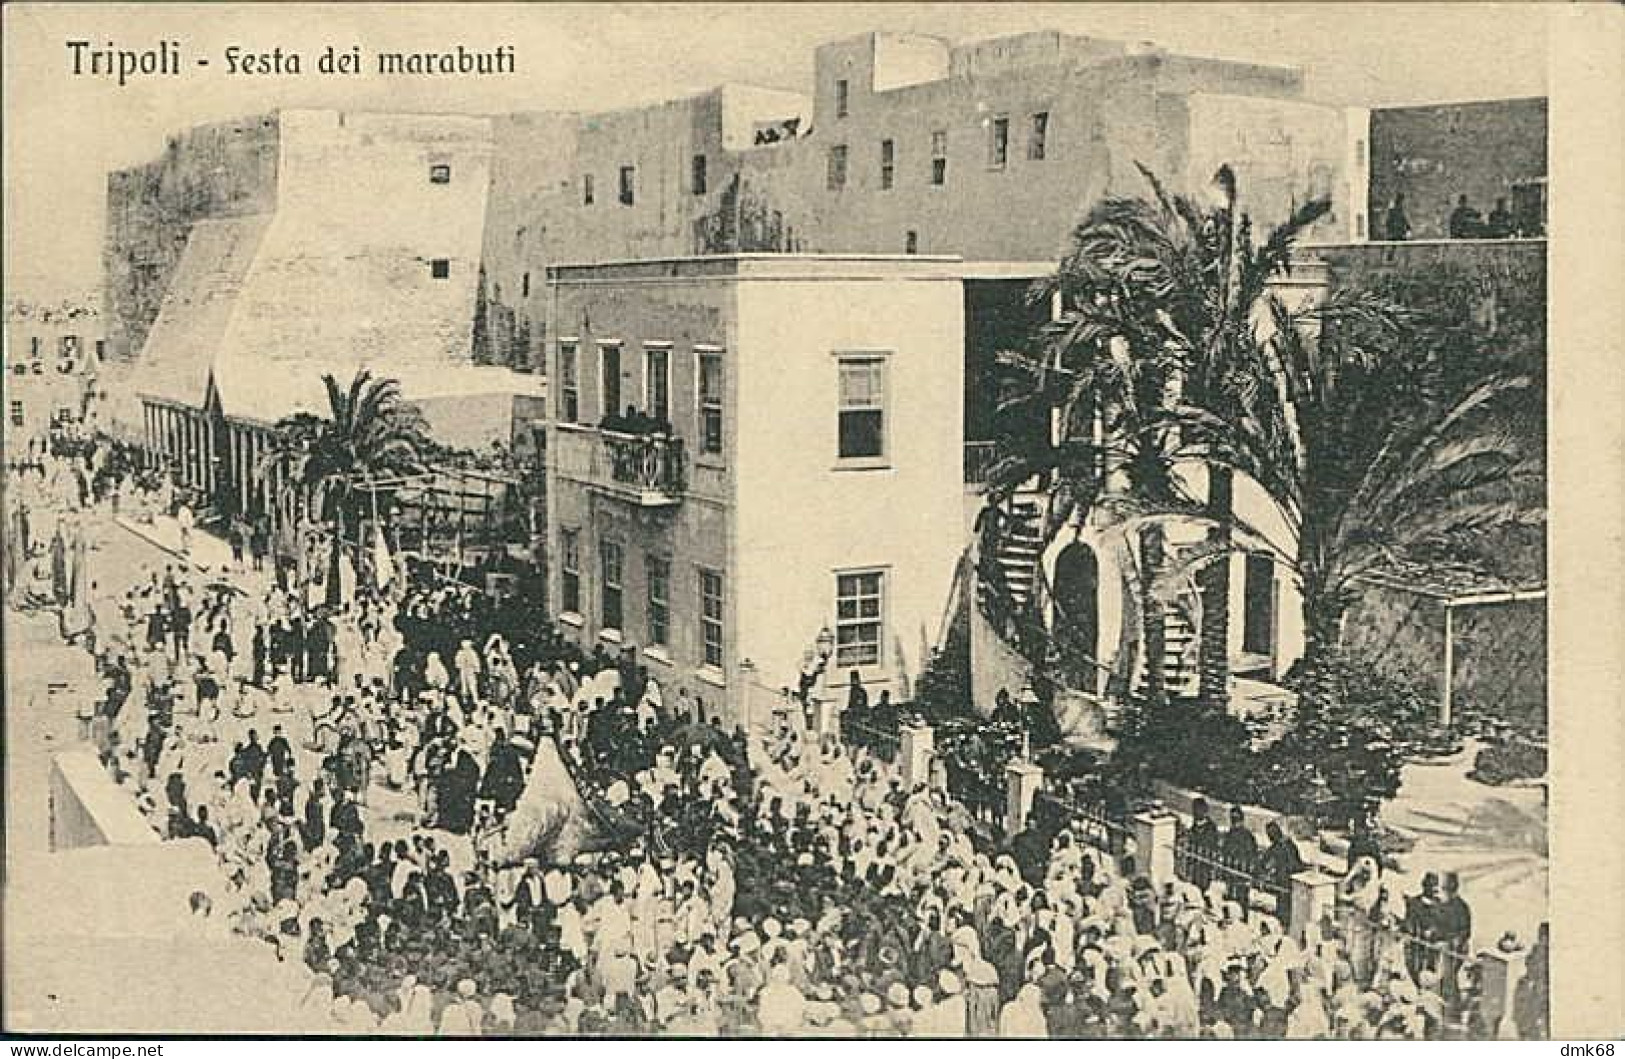 LIBIA / LIBYA - TRIPOLI - FESTA DEI MARABUTI - EDIT TRAMPETTI & MIGLIACCIO - 1910s (12452) - Libyen